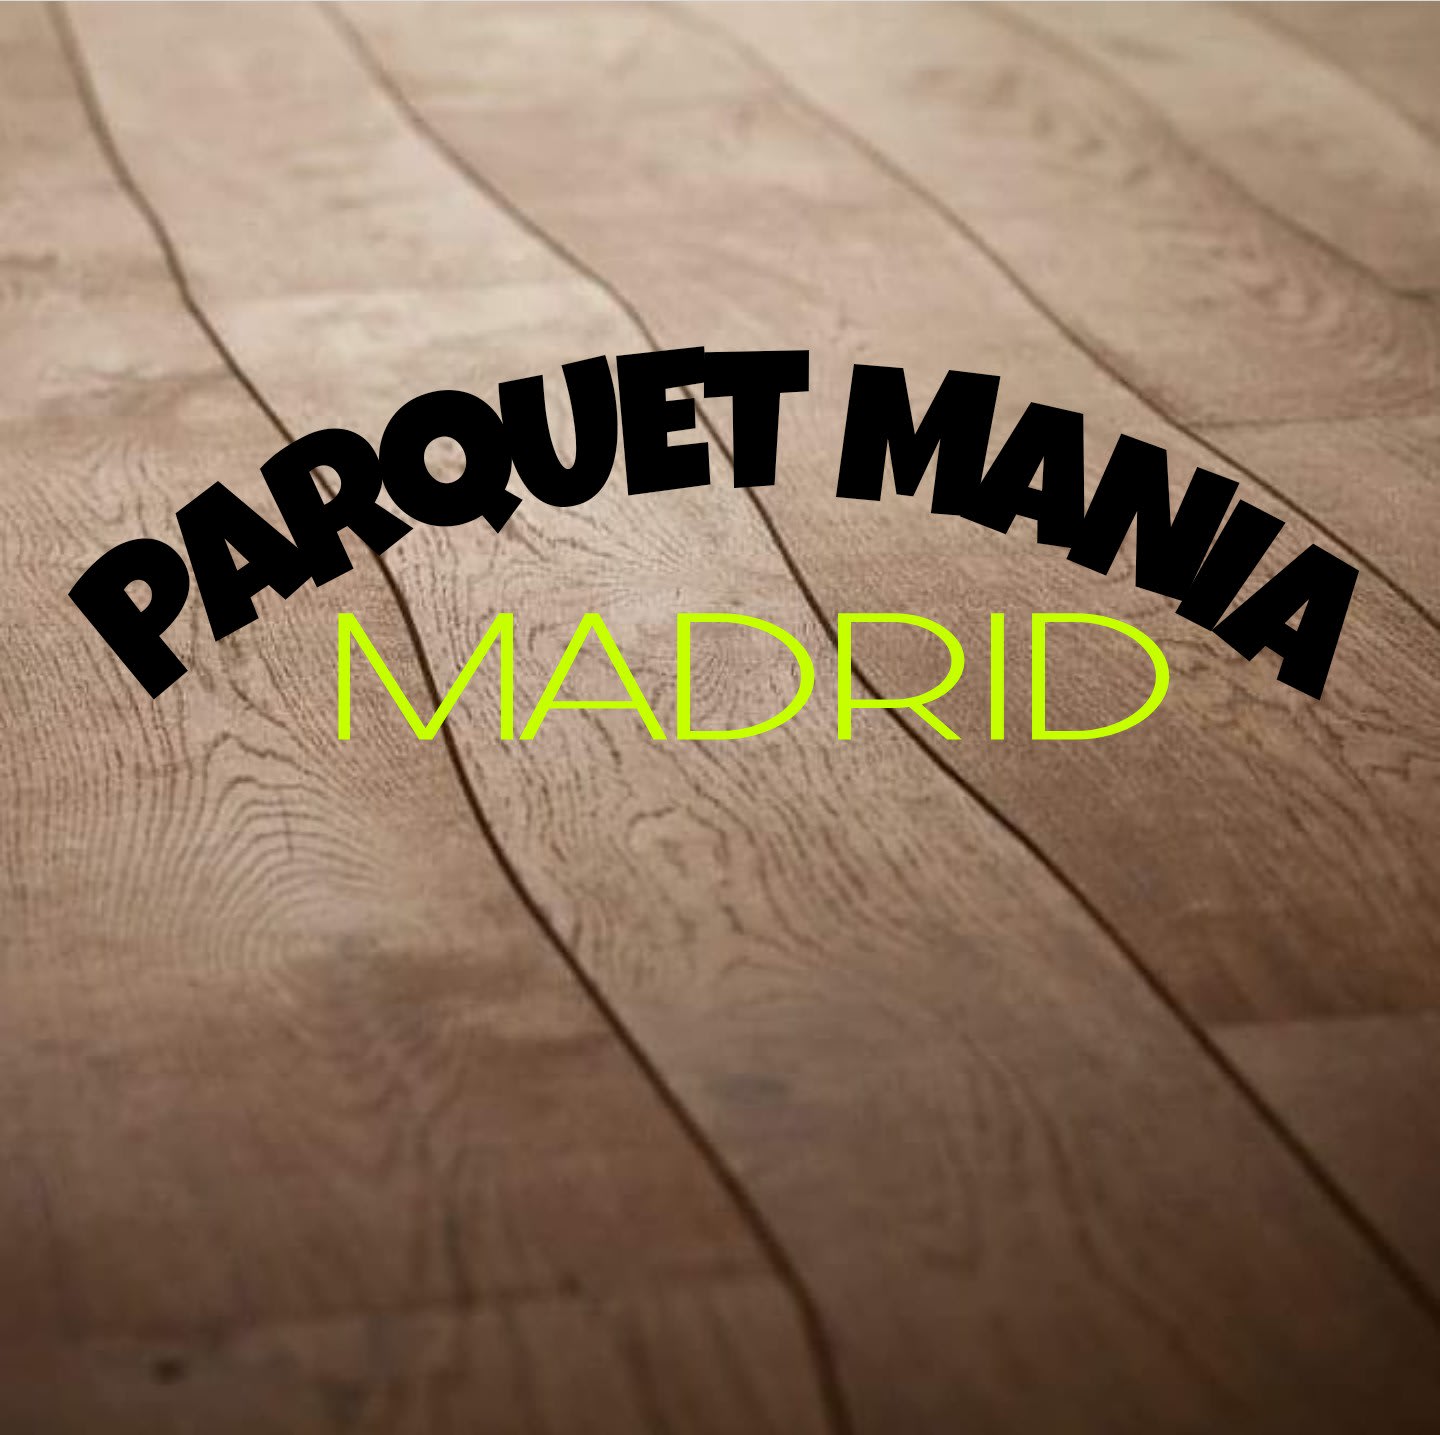 ParquetMania Madrid